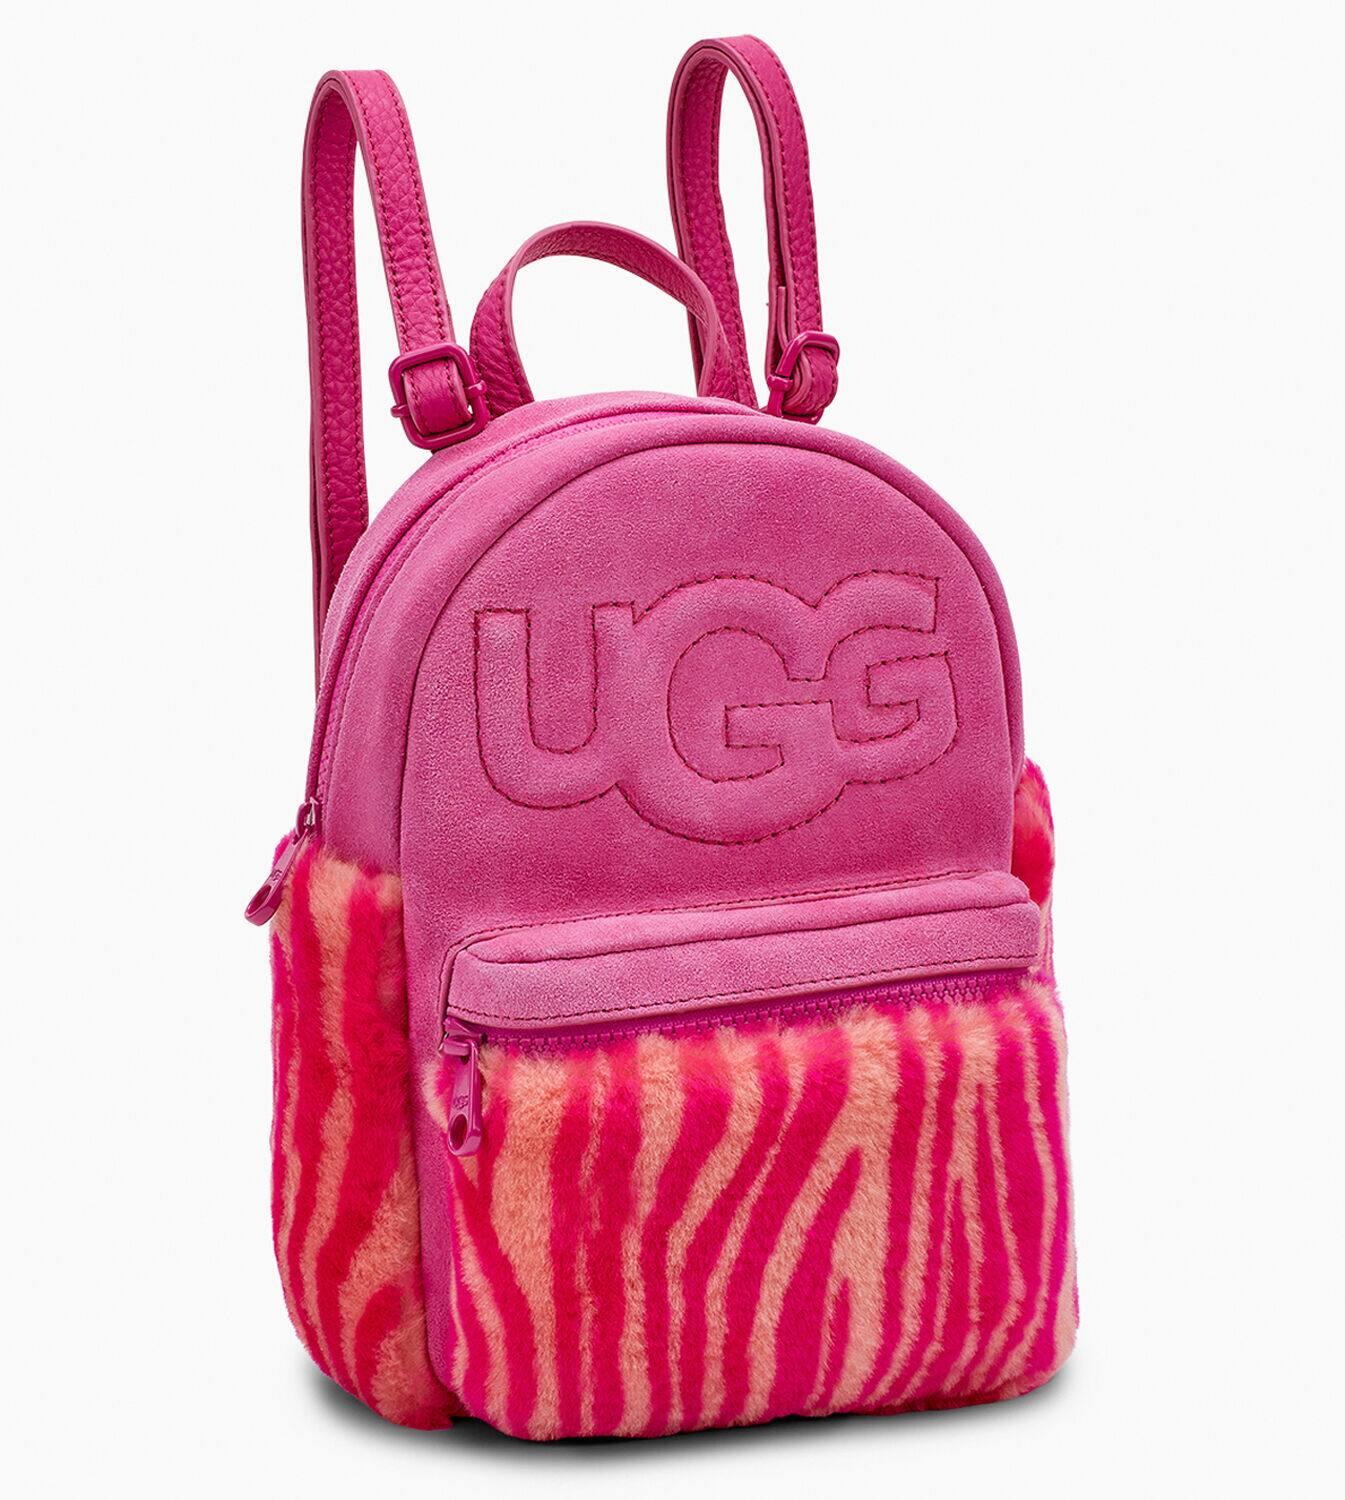 Ugg Zebra Backpack Flash Sales, SAVE 52%.